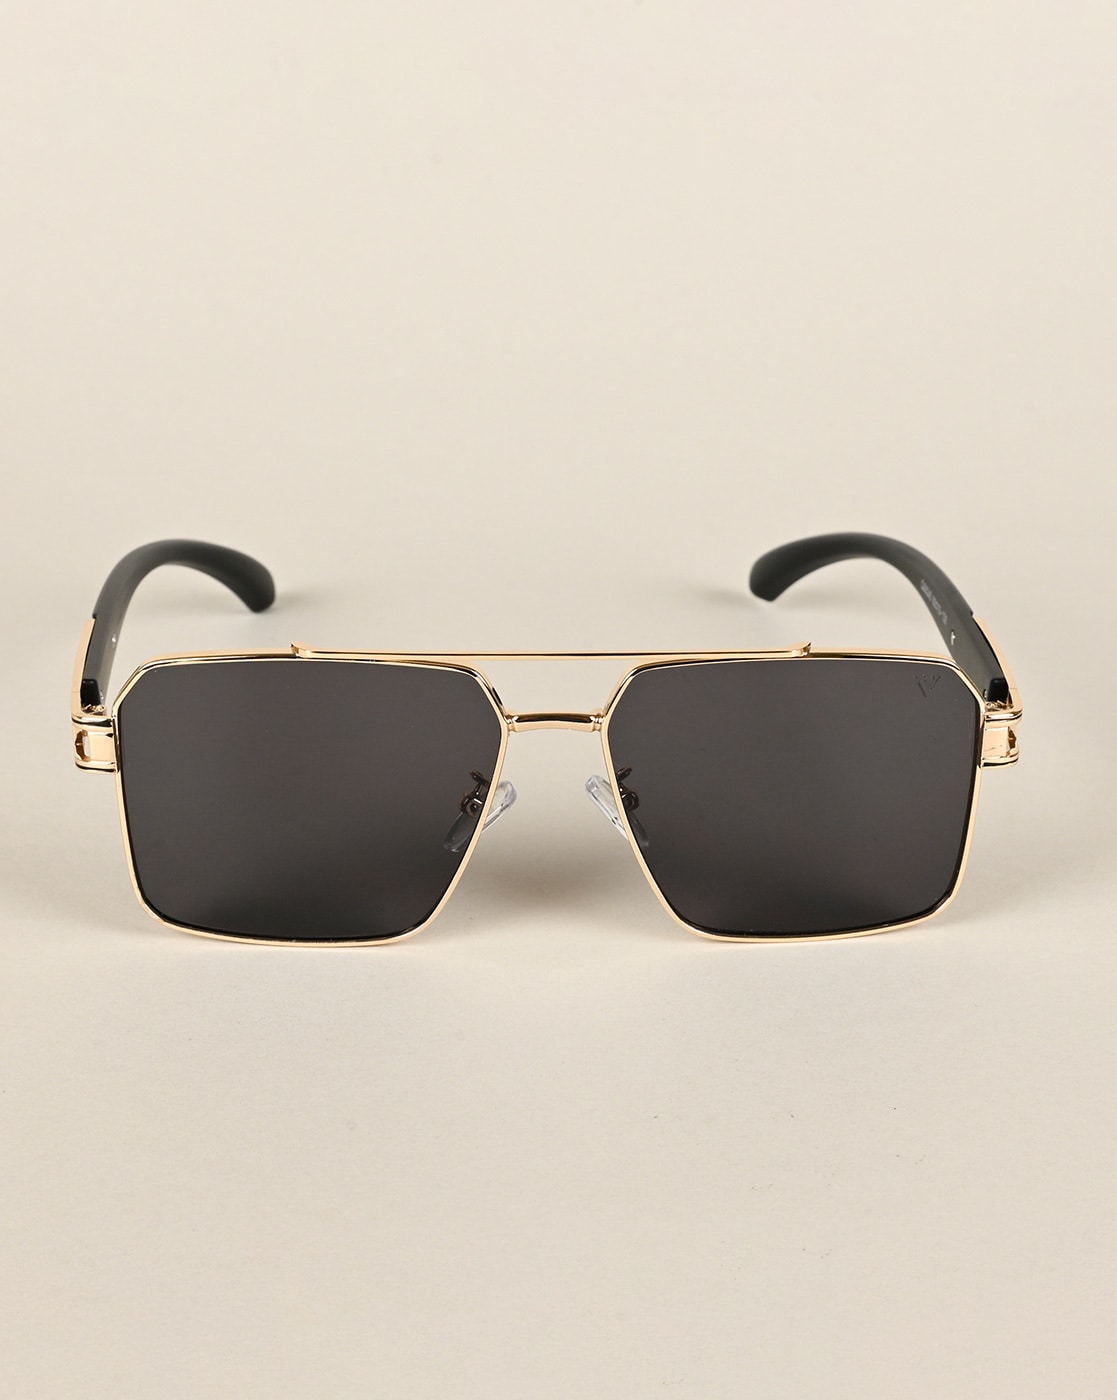 Voyage Rectangle Sunglasses for Men & Women (Black Lens | Golden Frame